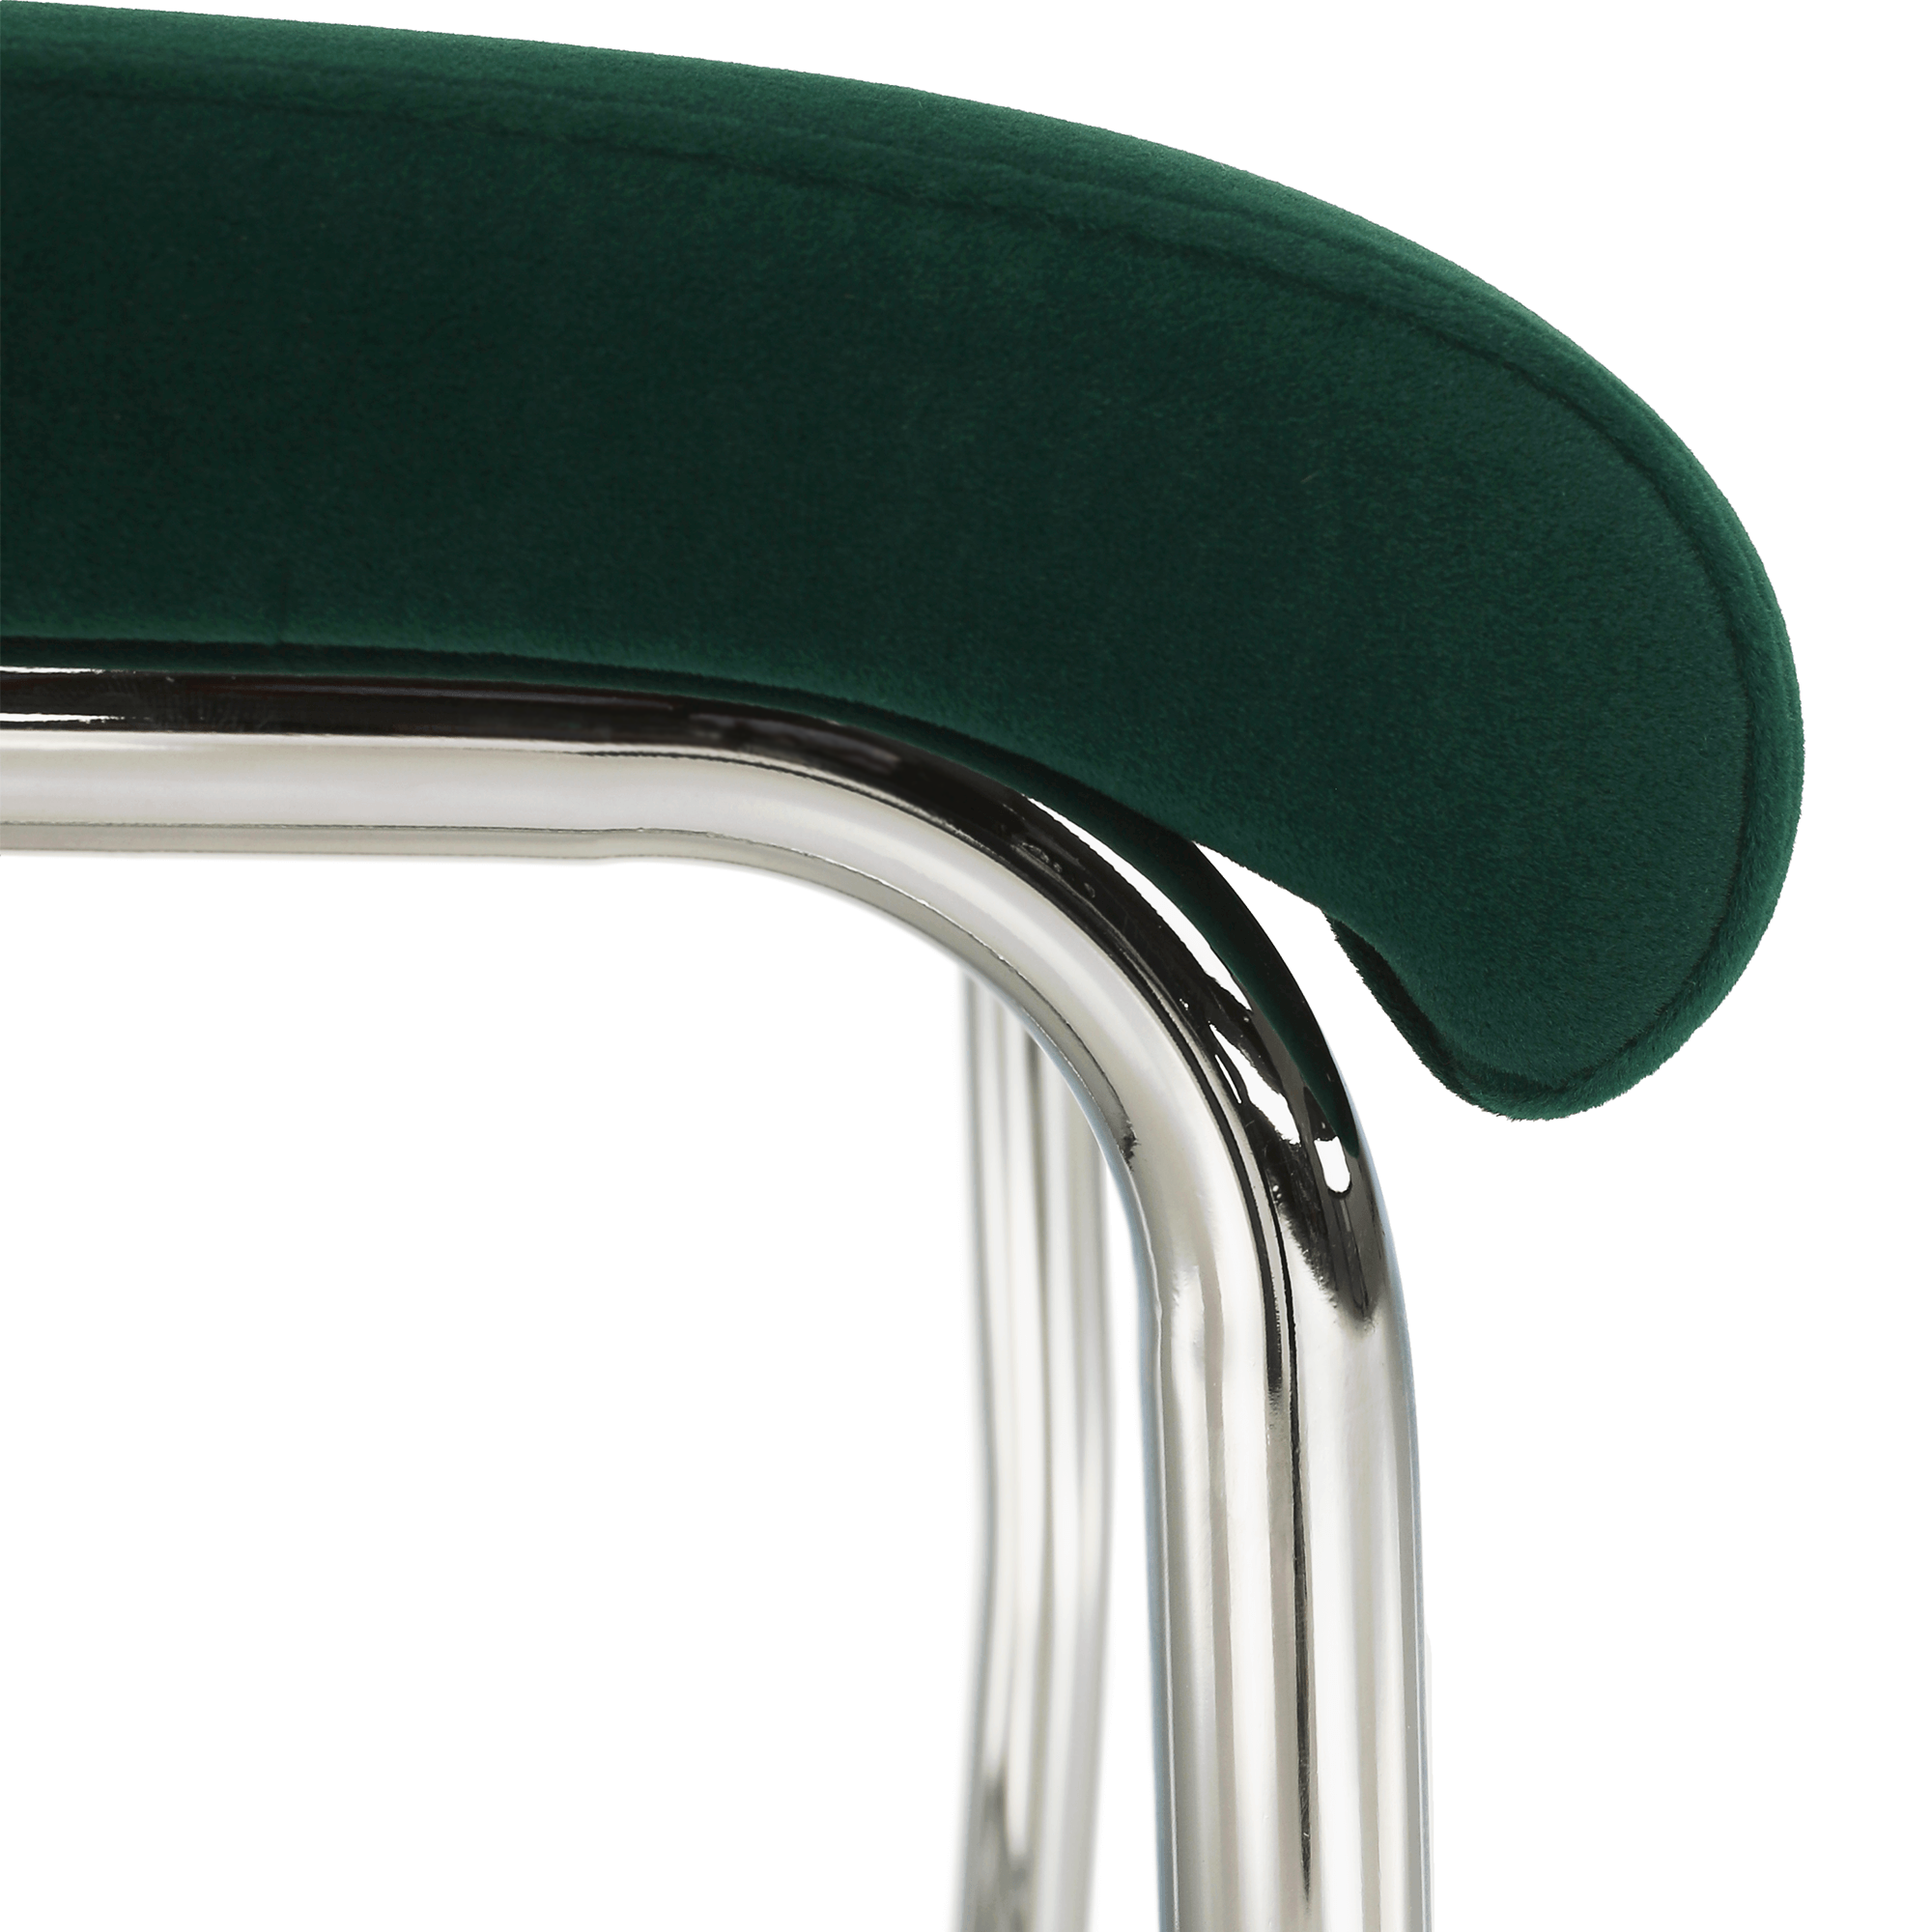 Jídelní židle, smaragdová Velvet látka, ABIRA NEW